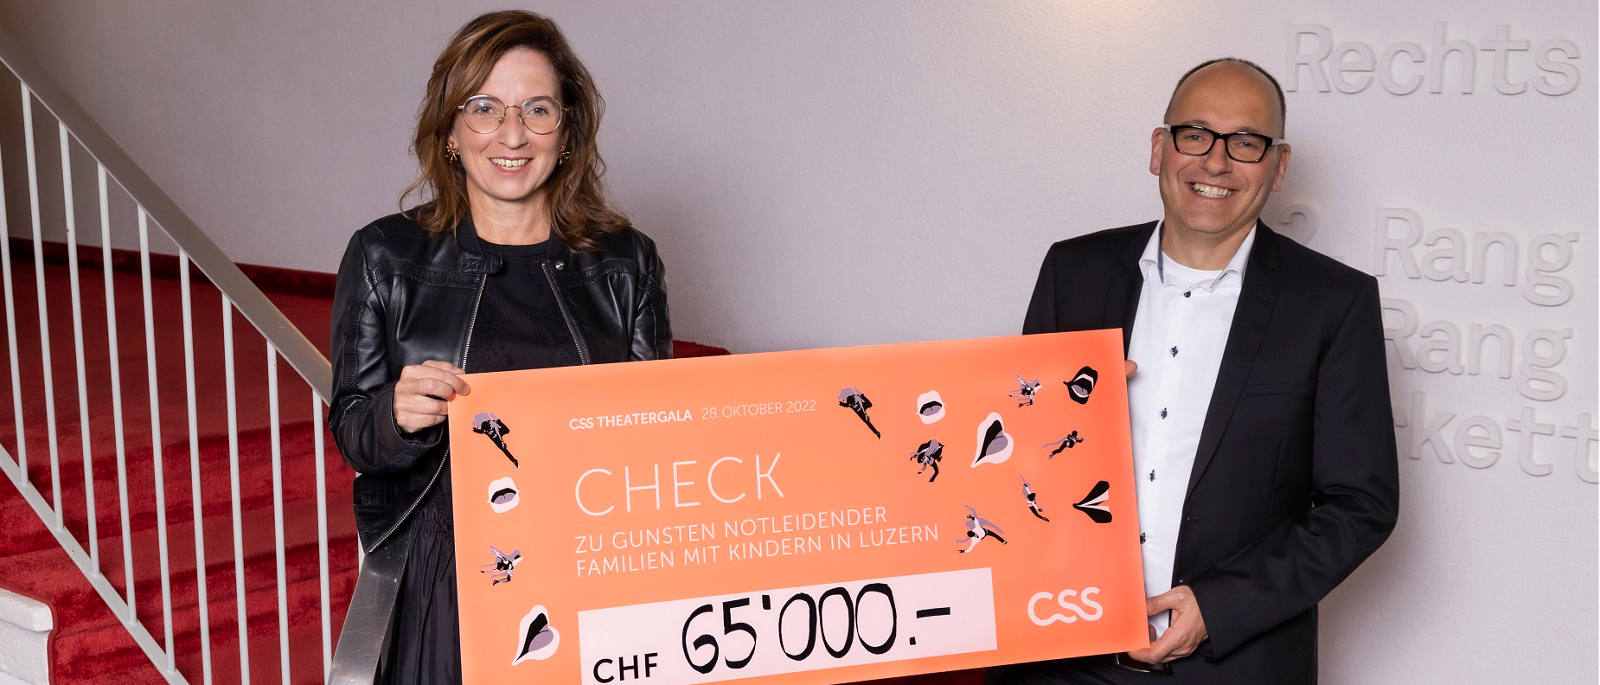 Philomena Colatrella, CEO der CSS, überreicht den Check im Theater Luzern an Daniel Furrer, Geschäftsleiter Caritas Luzern